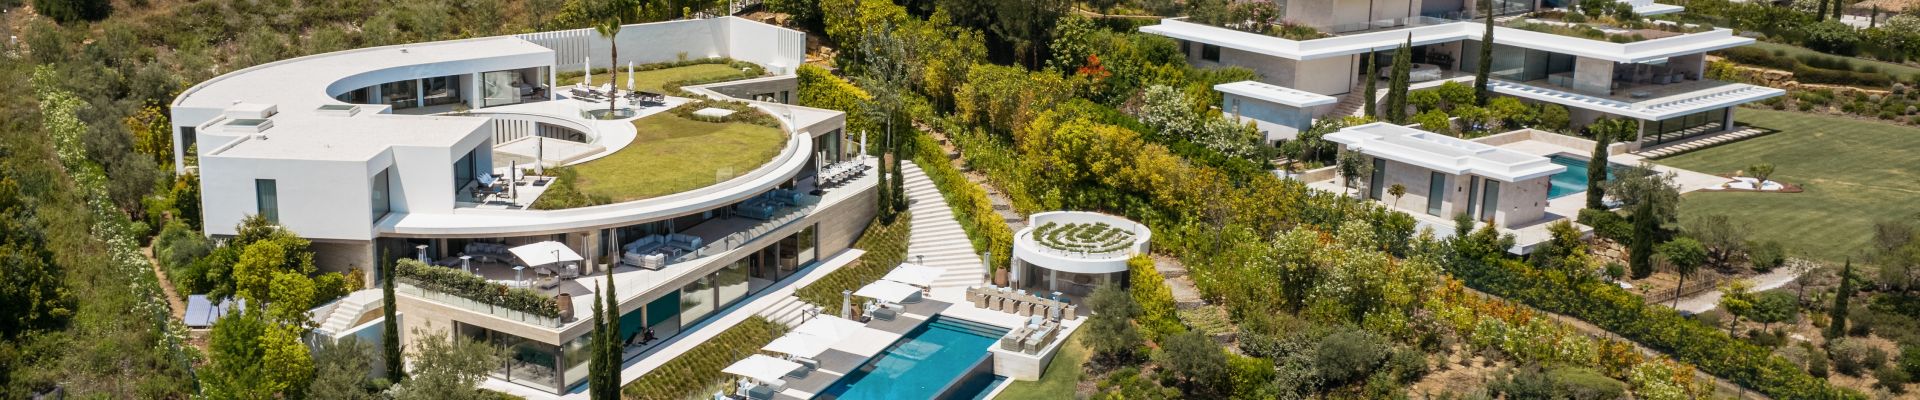 Luxury villas for sale in Sotogrande